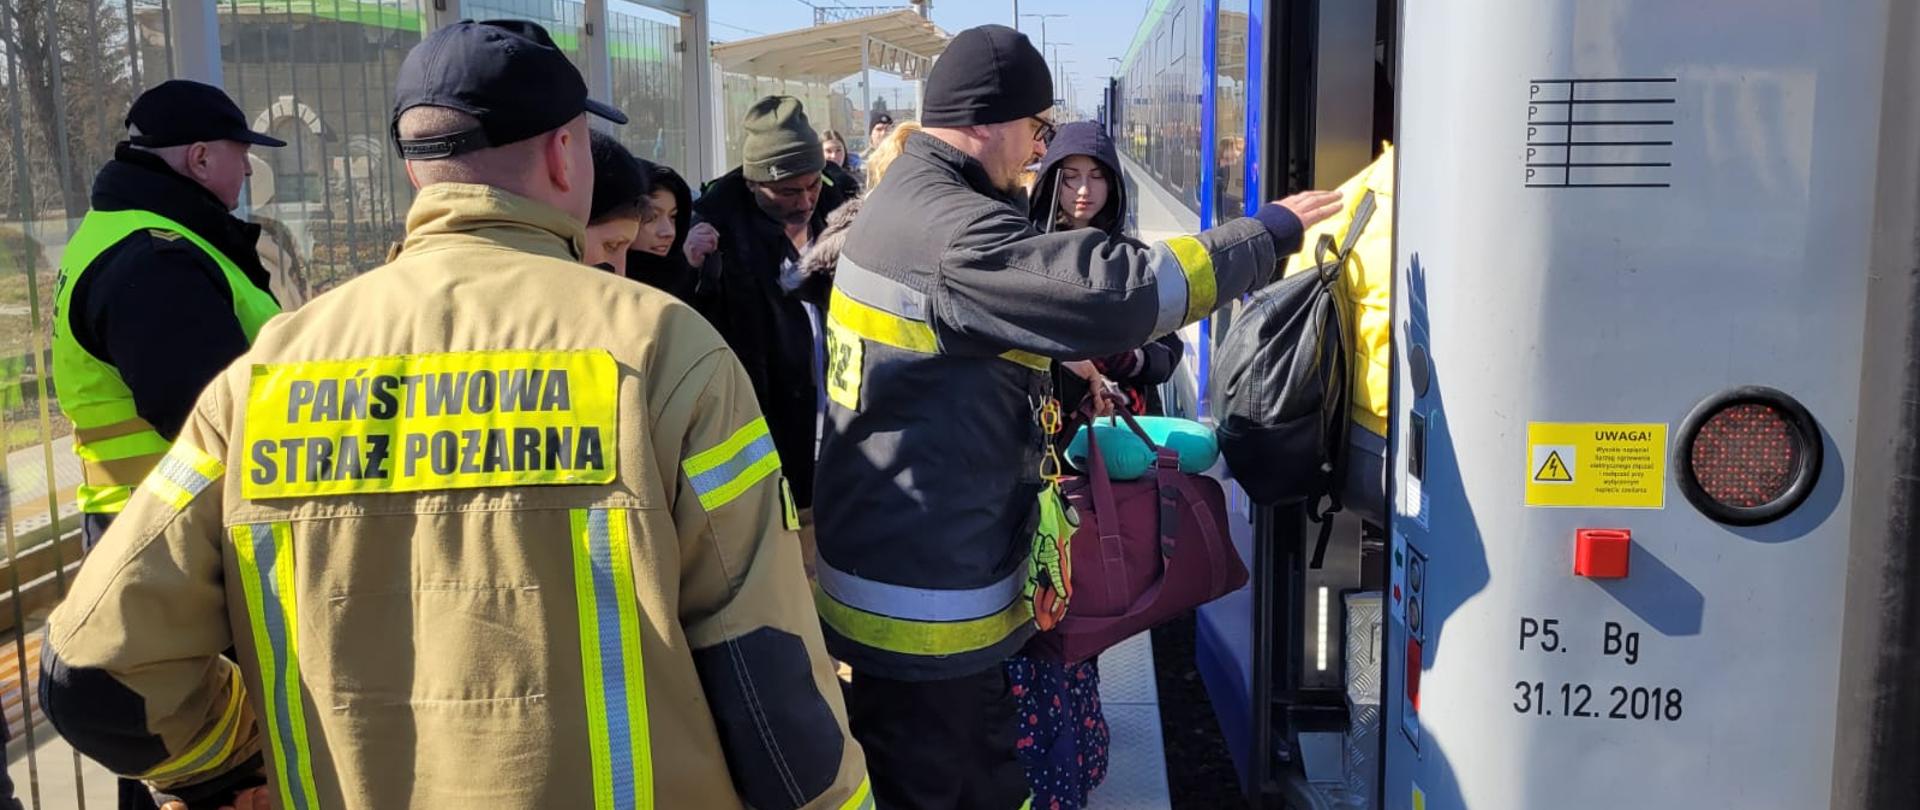 Zdjęcia wykonanie na przejściu granicznym w miejscowości Budomierz. Strażacy z KP PSP w Jaśle pomagają uchodźcom z Ukrainy w transporcie do miejsc zakwaterowania